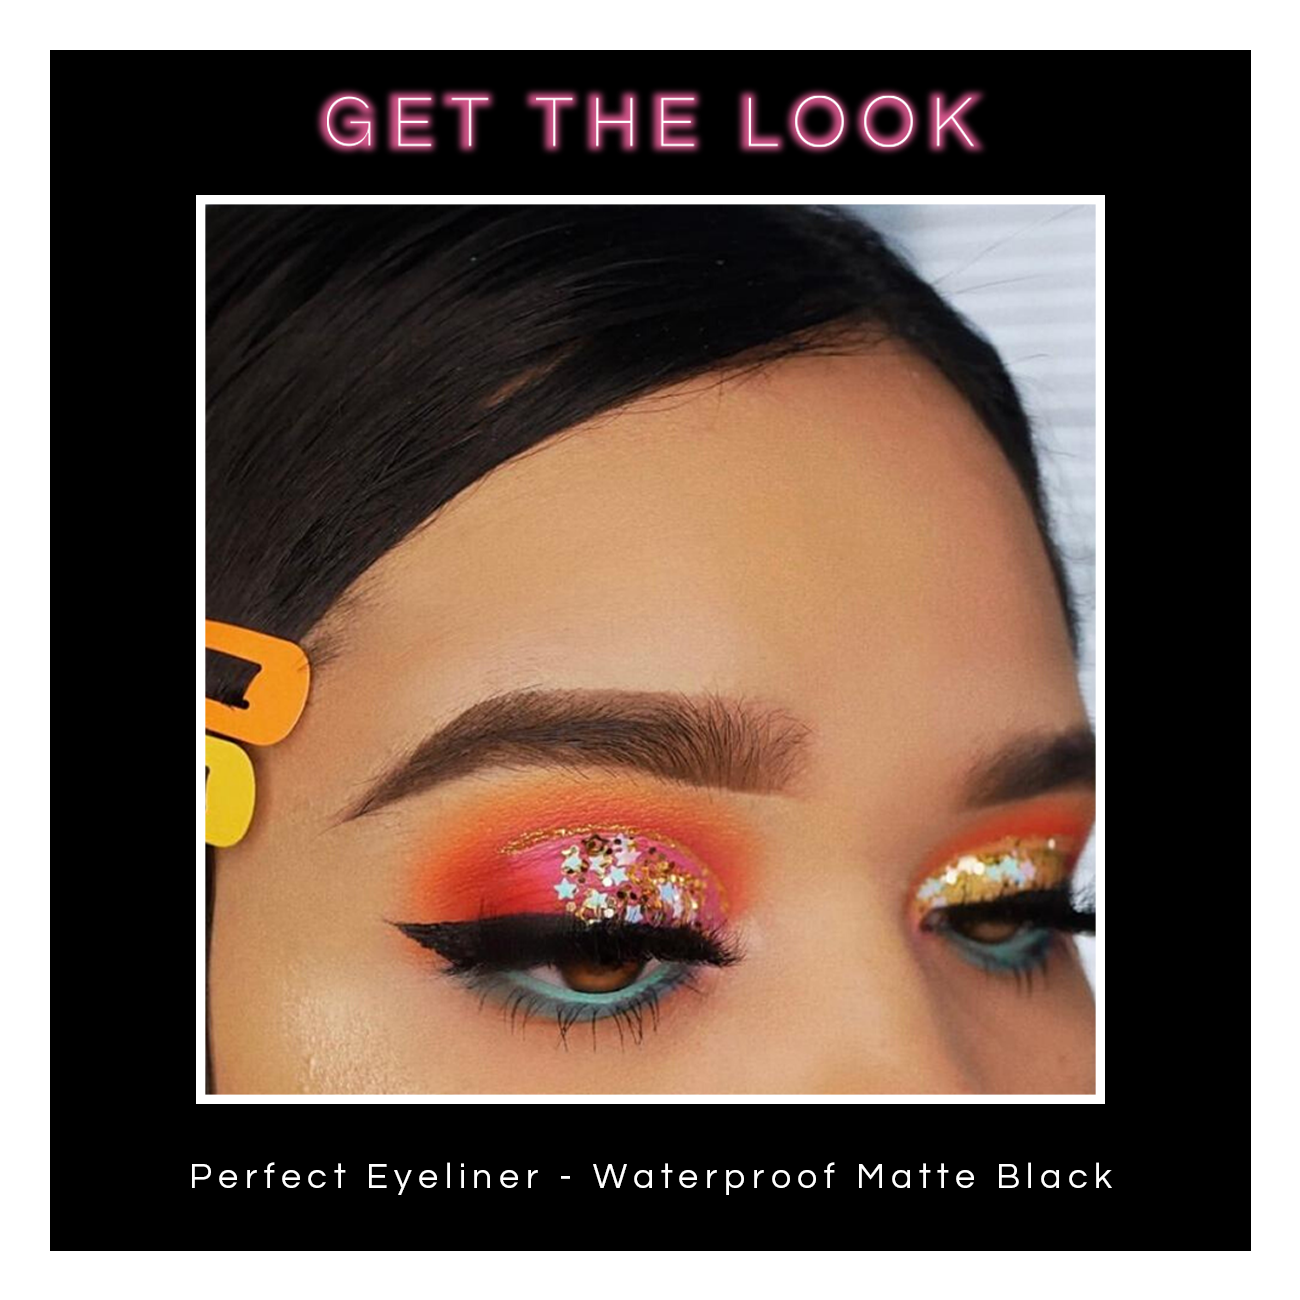 Perfect Eyeliner - Waterproof Matte Black